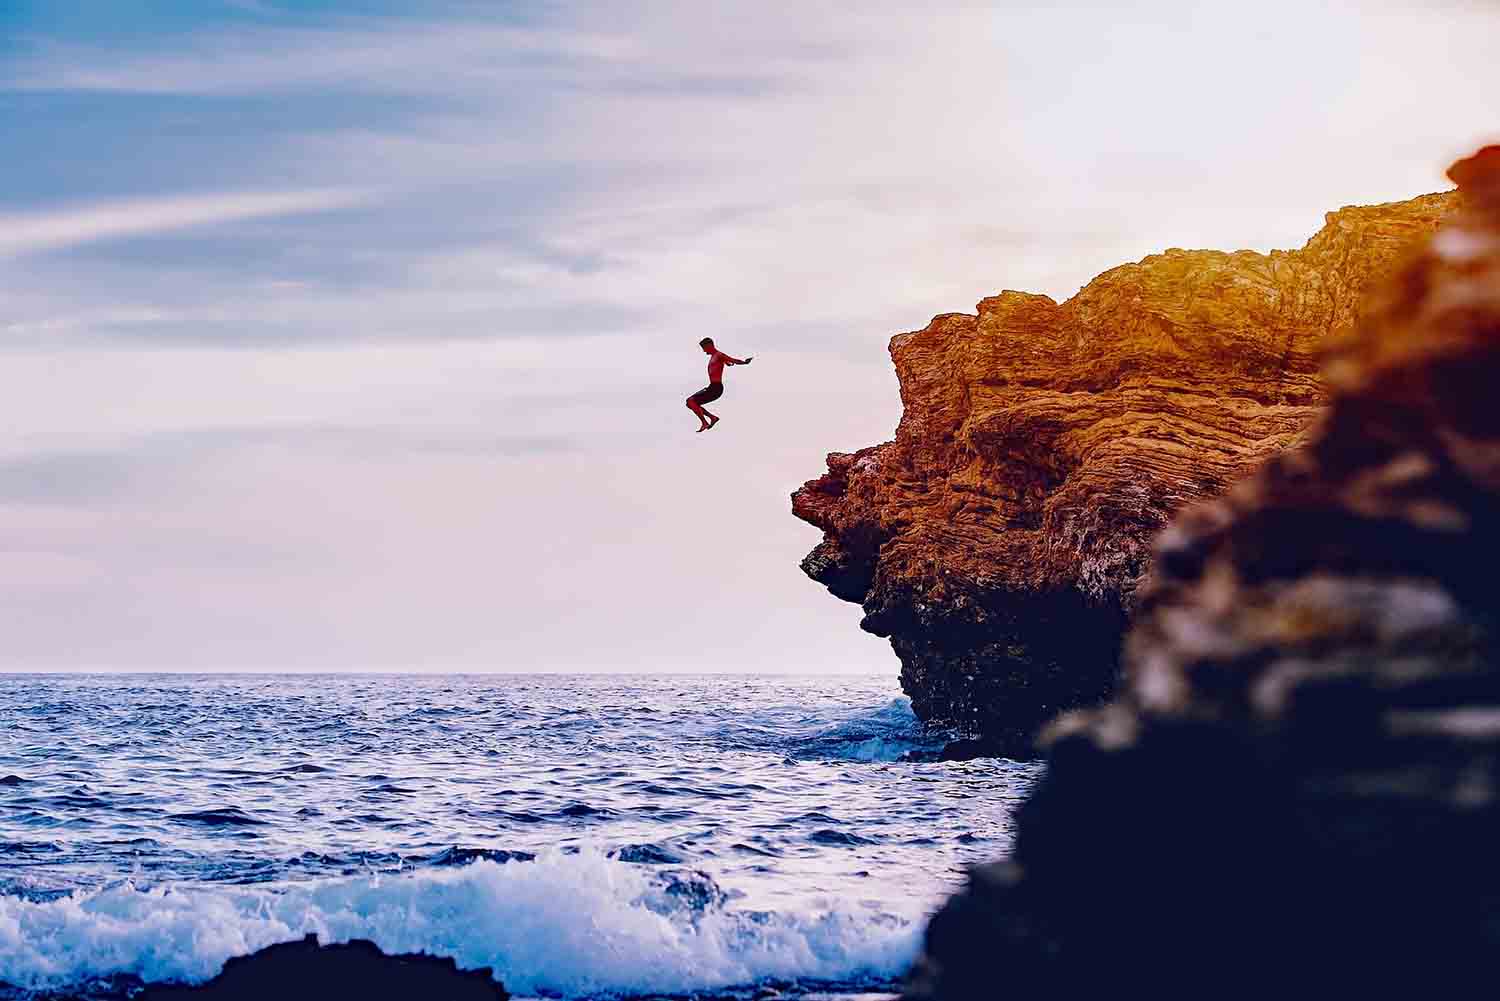 Cliff Diving é uma prática que inclui grandes saltos ornamentais em águas rasas sem equipamentos de segurança